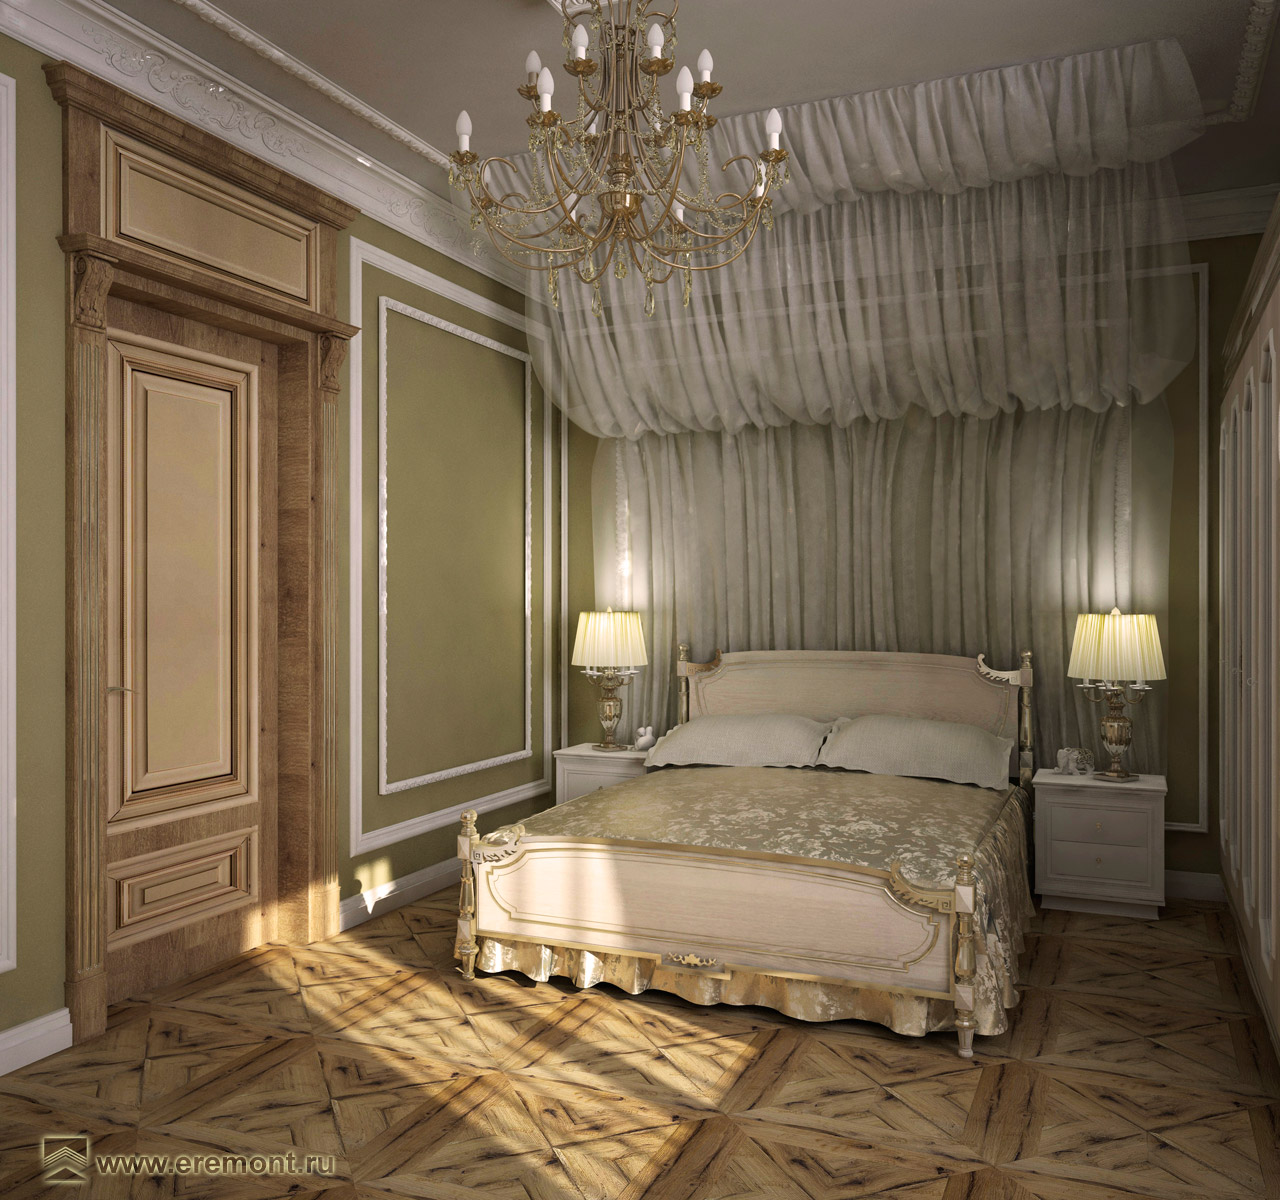 Дом классика-барокко. Этаж 2: Спальня 45665